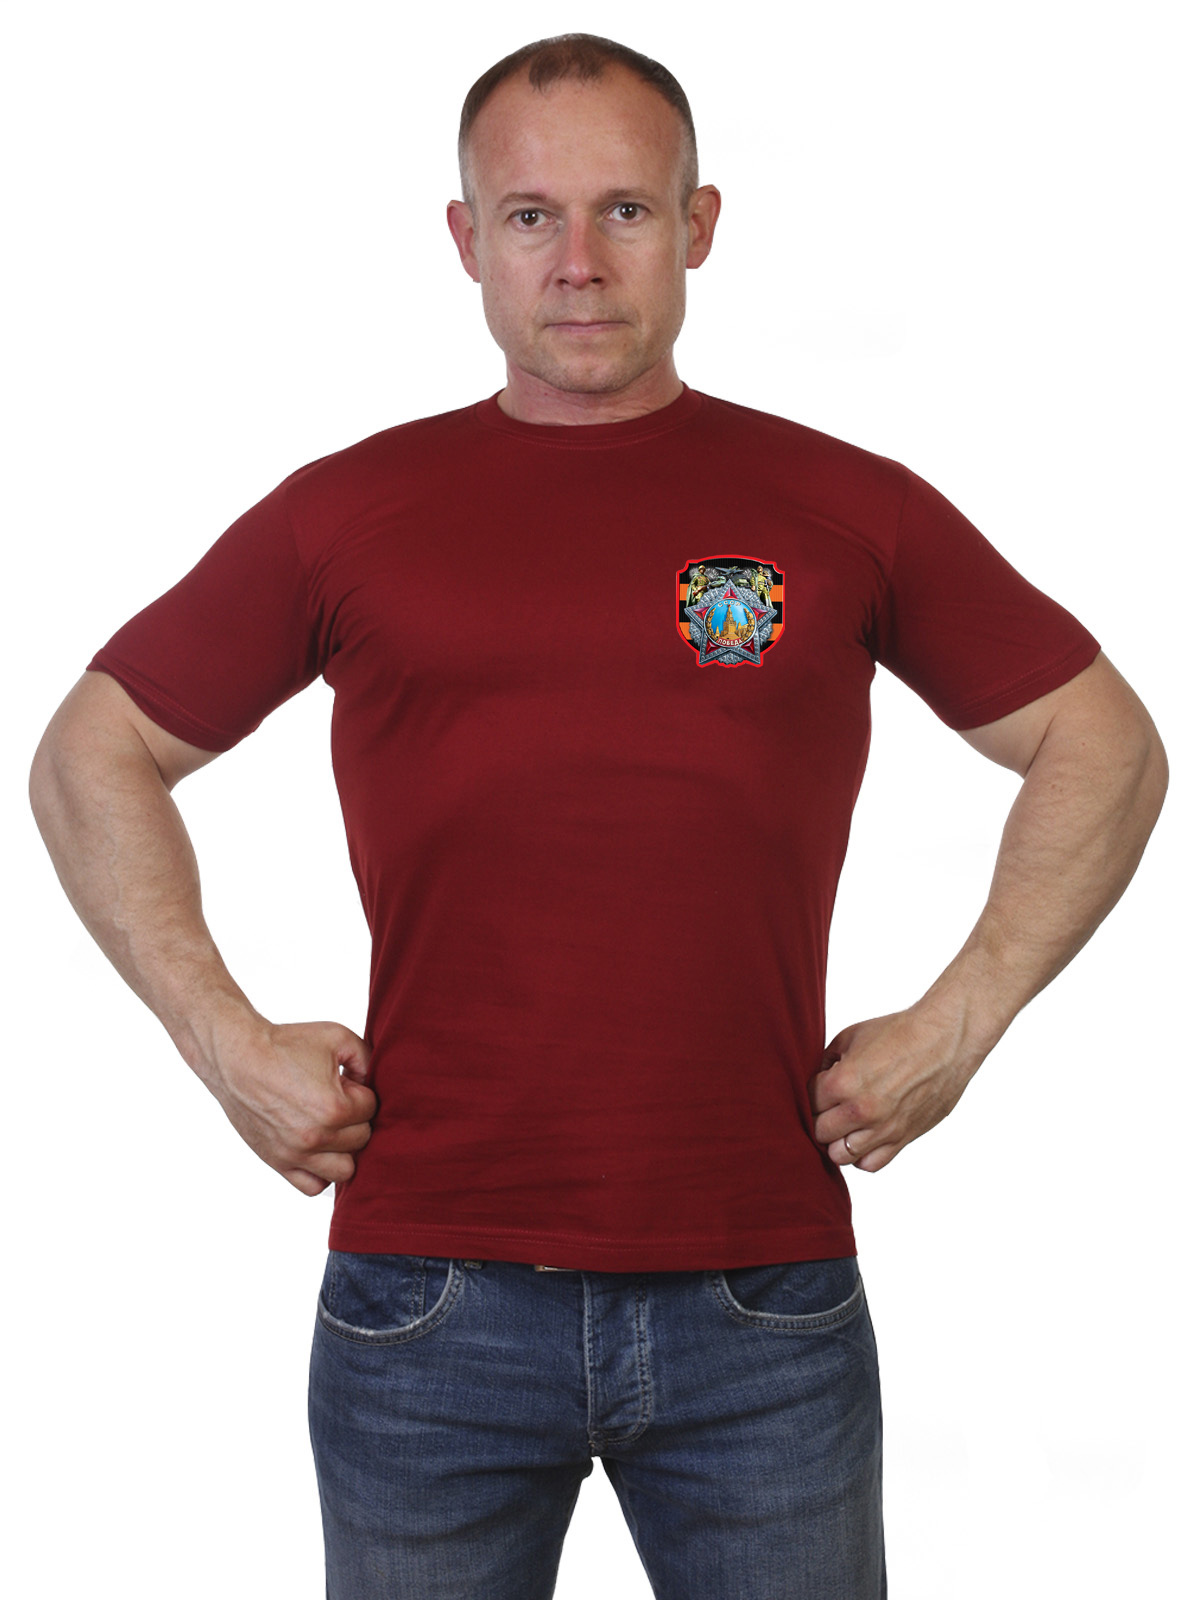 Мужская футболка с орденом Победы 